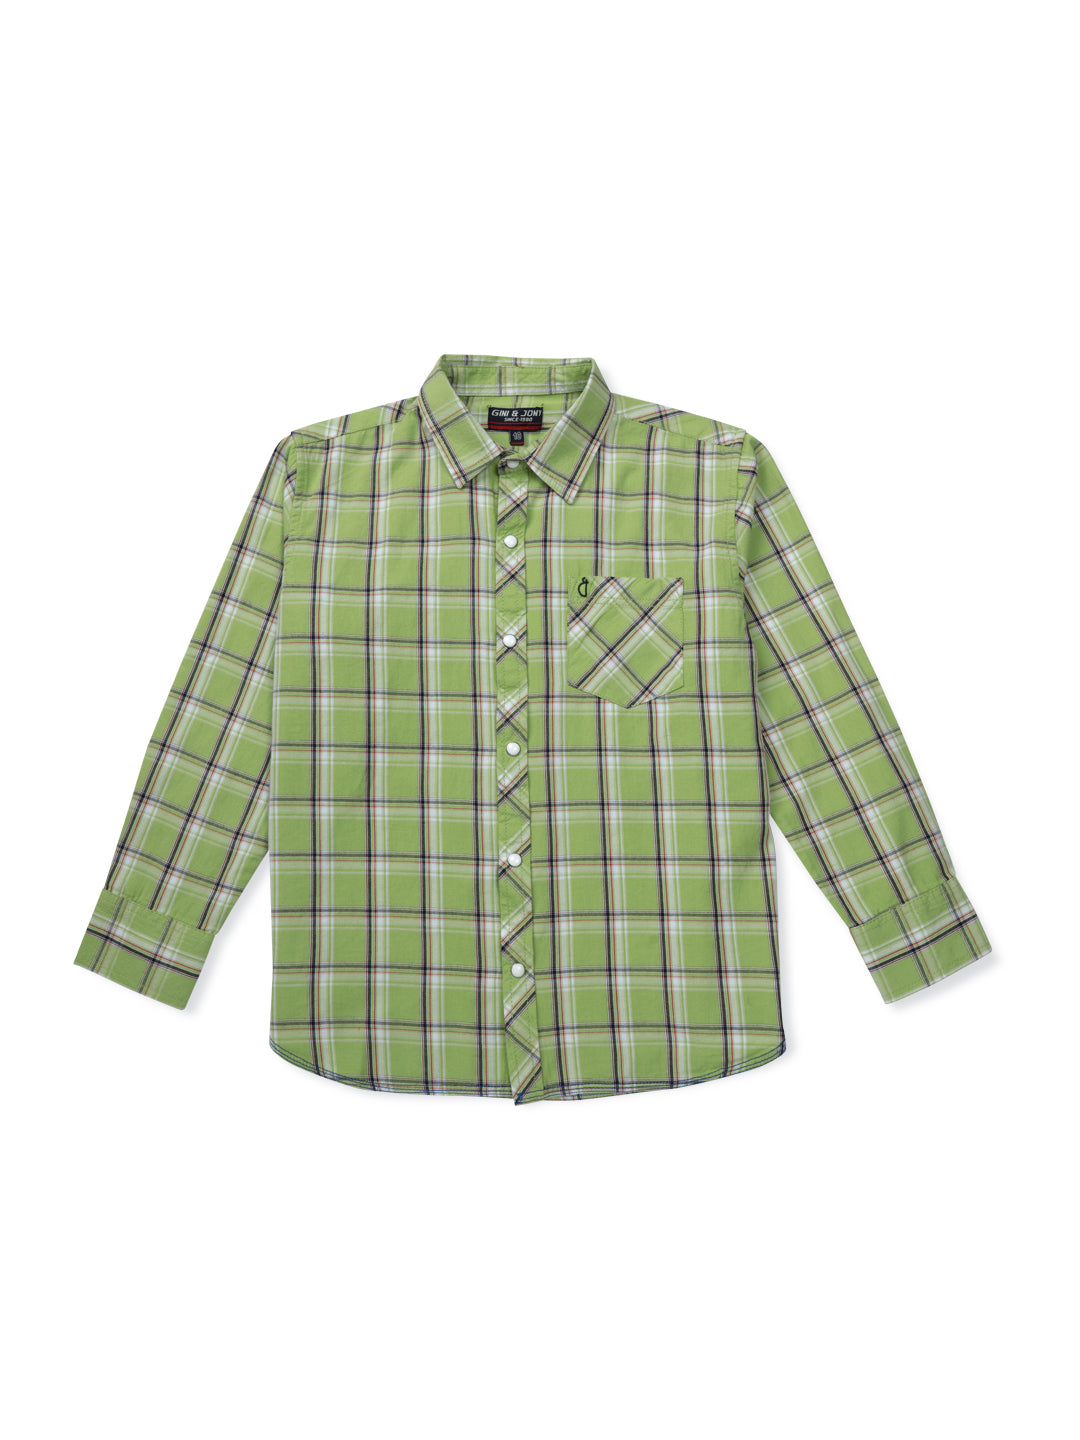 Boys Green Checks Woven Shirt